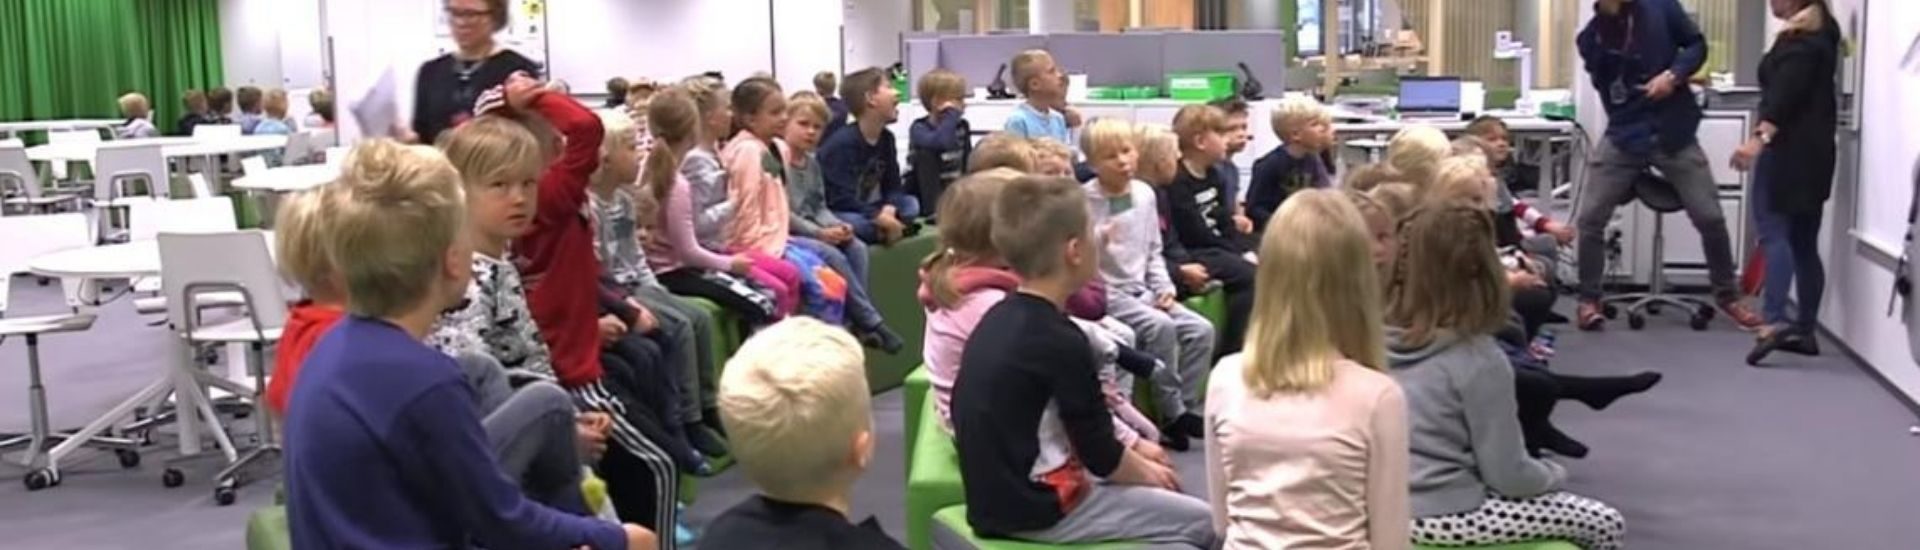 Estudiantes de una escuela de Finlandia